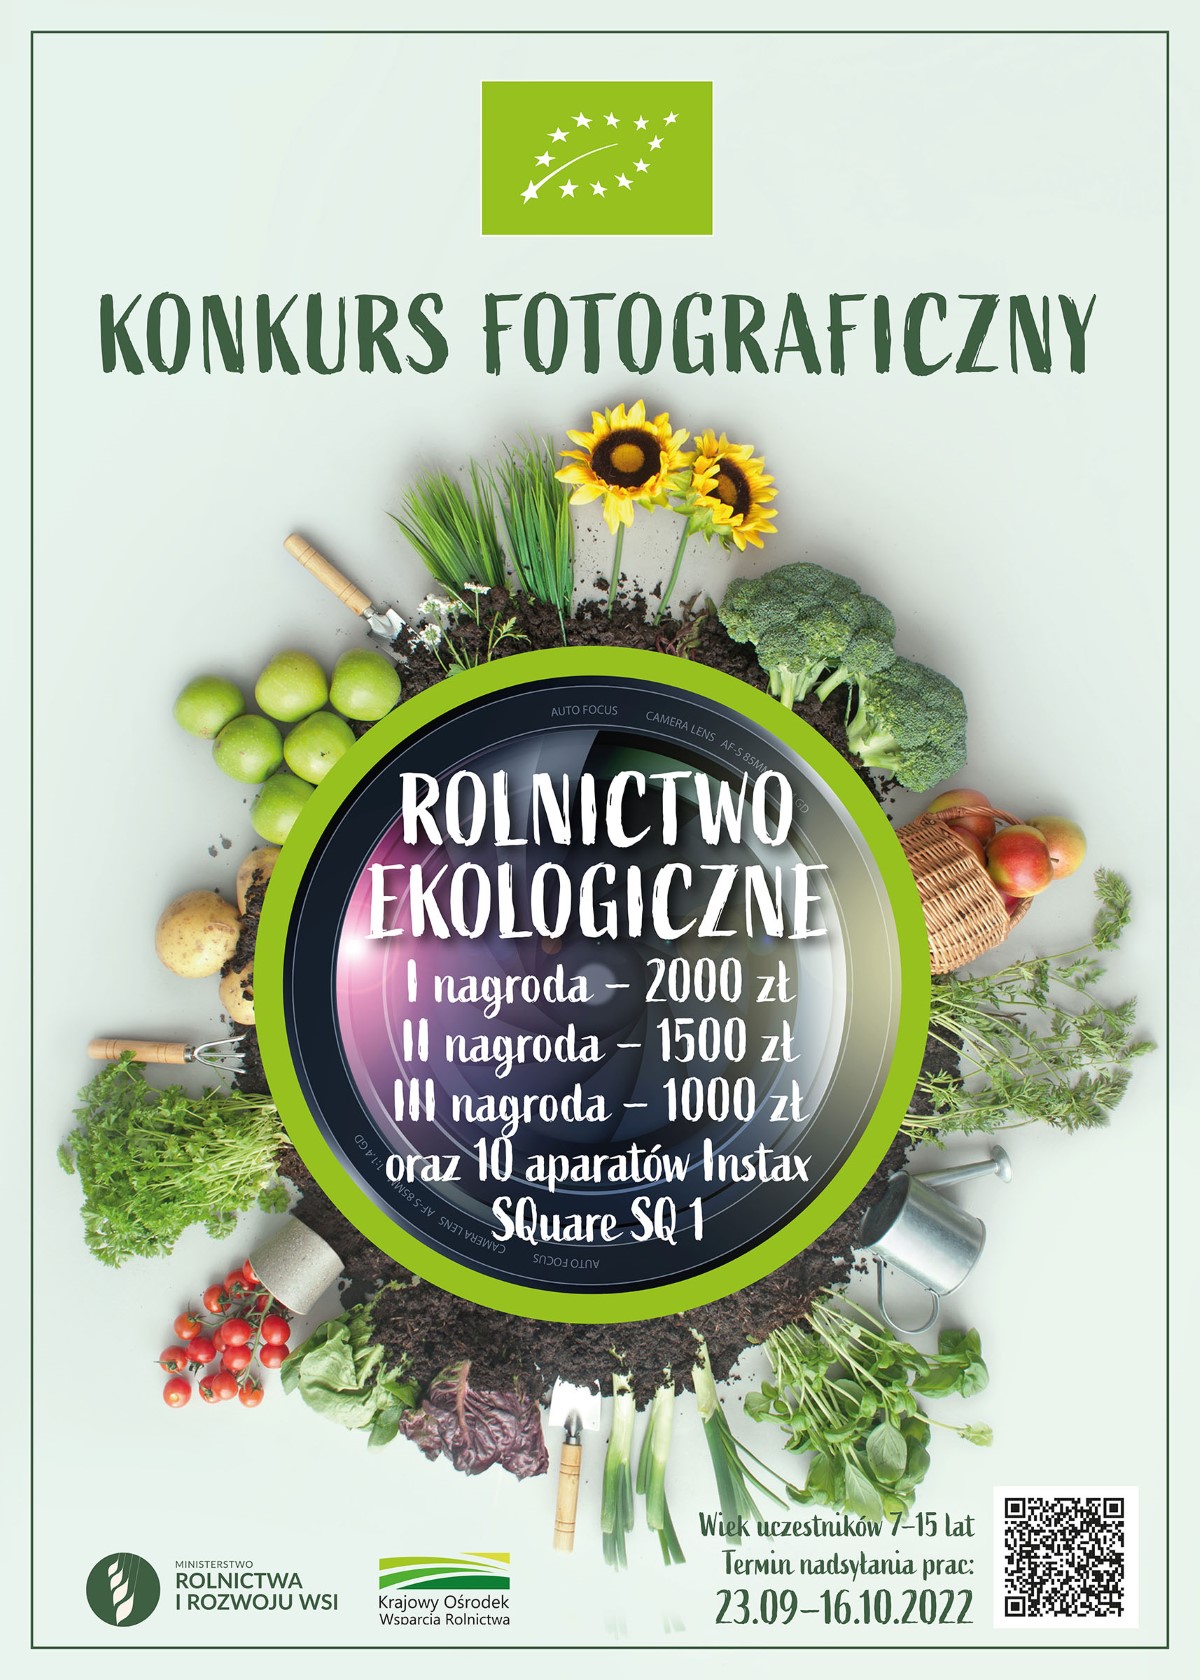 Konkurs fotograficzny „Rolnictwo ekologiczne